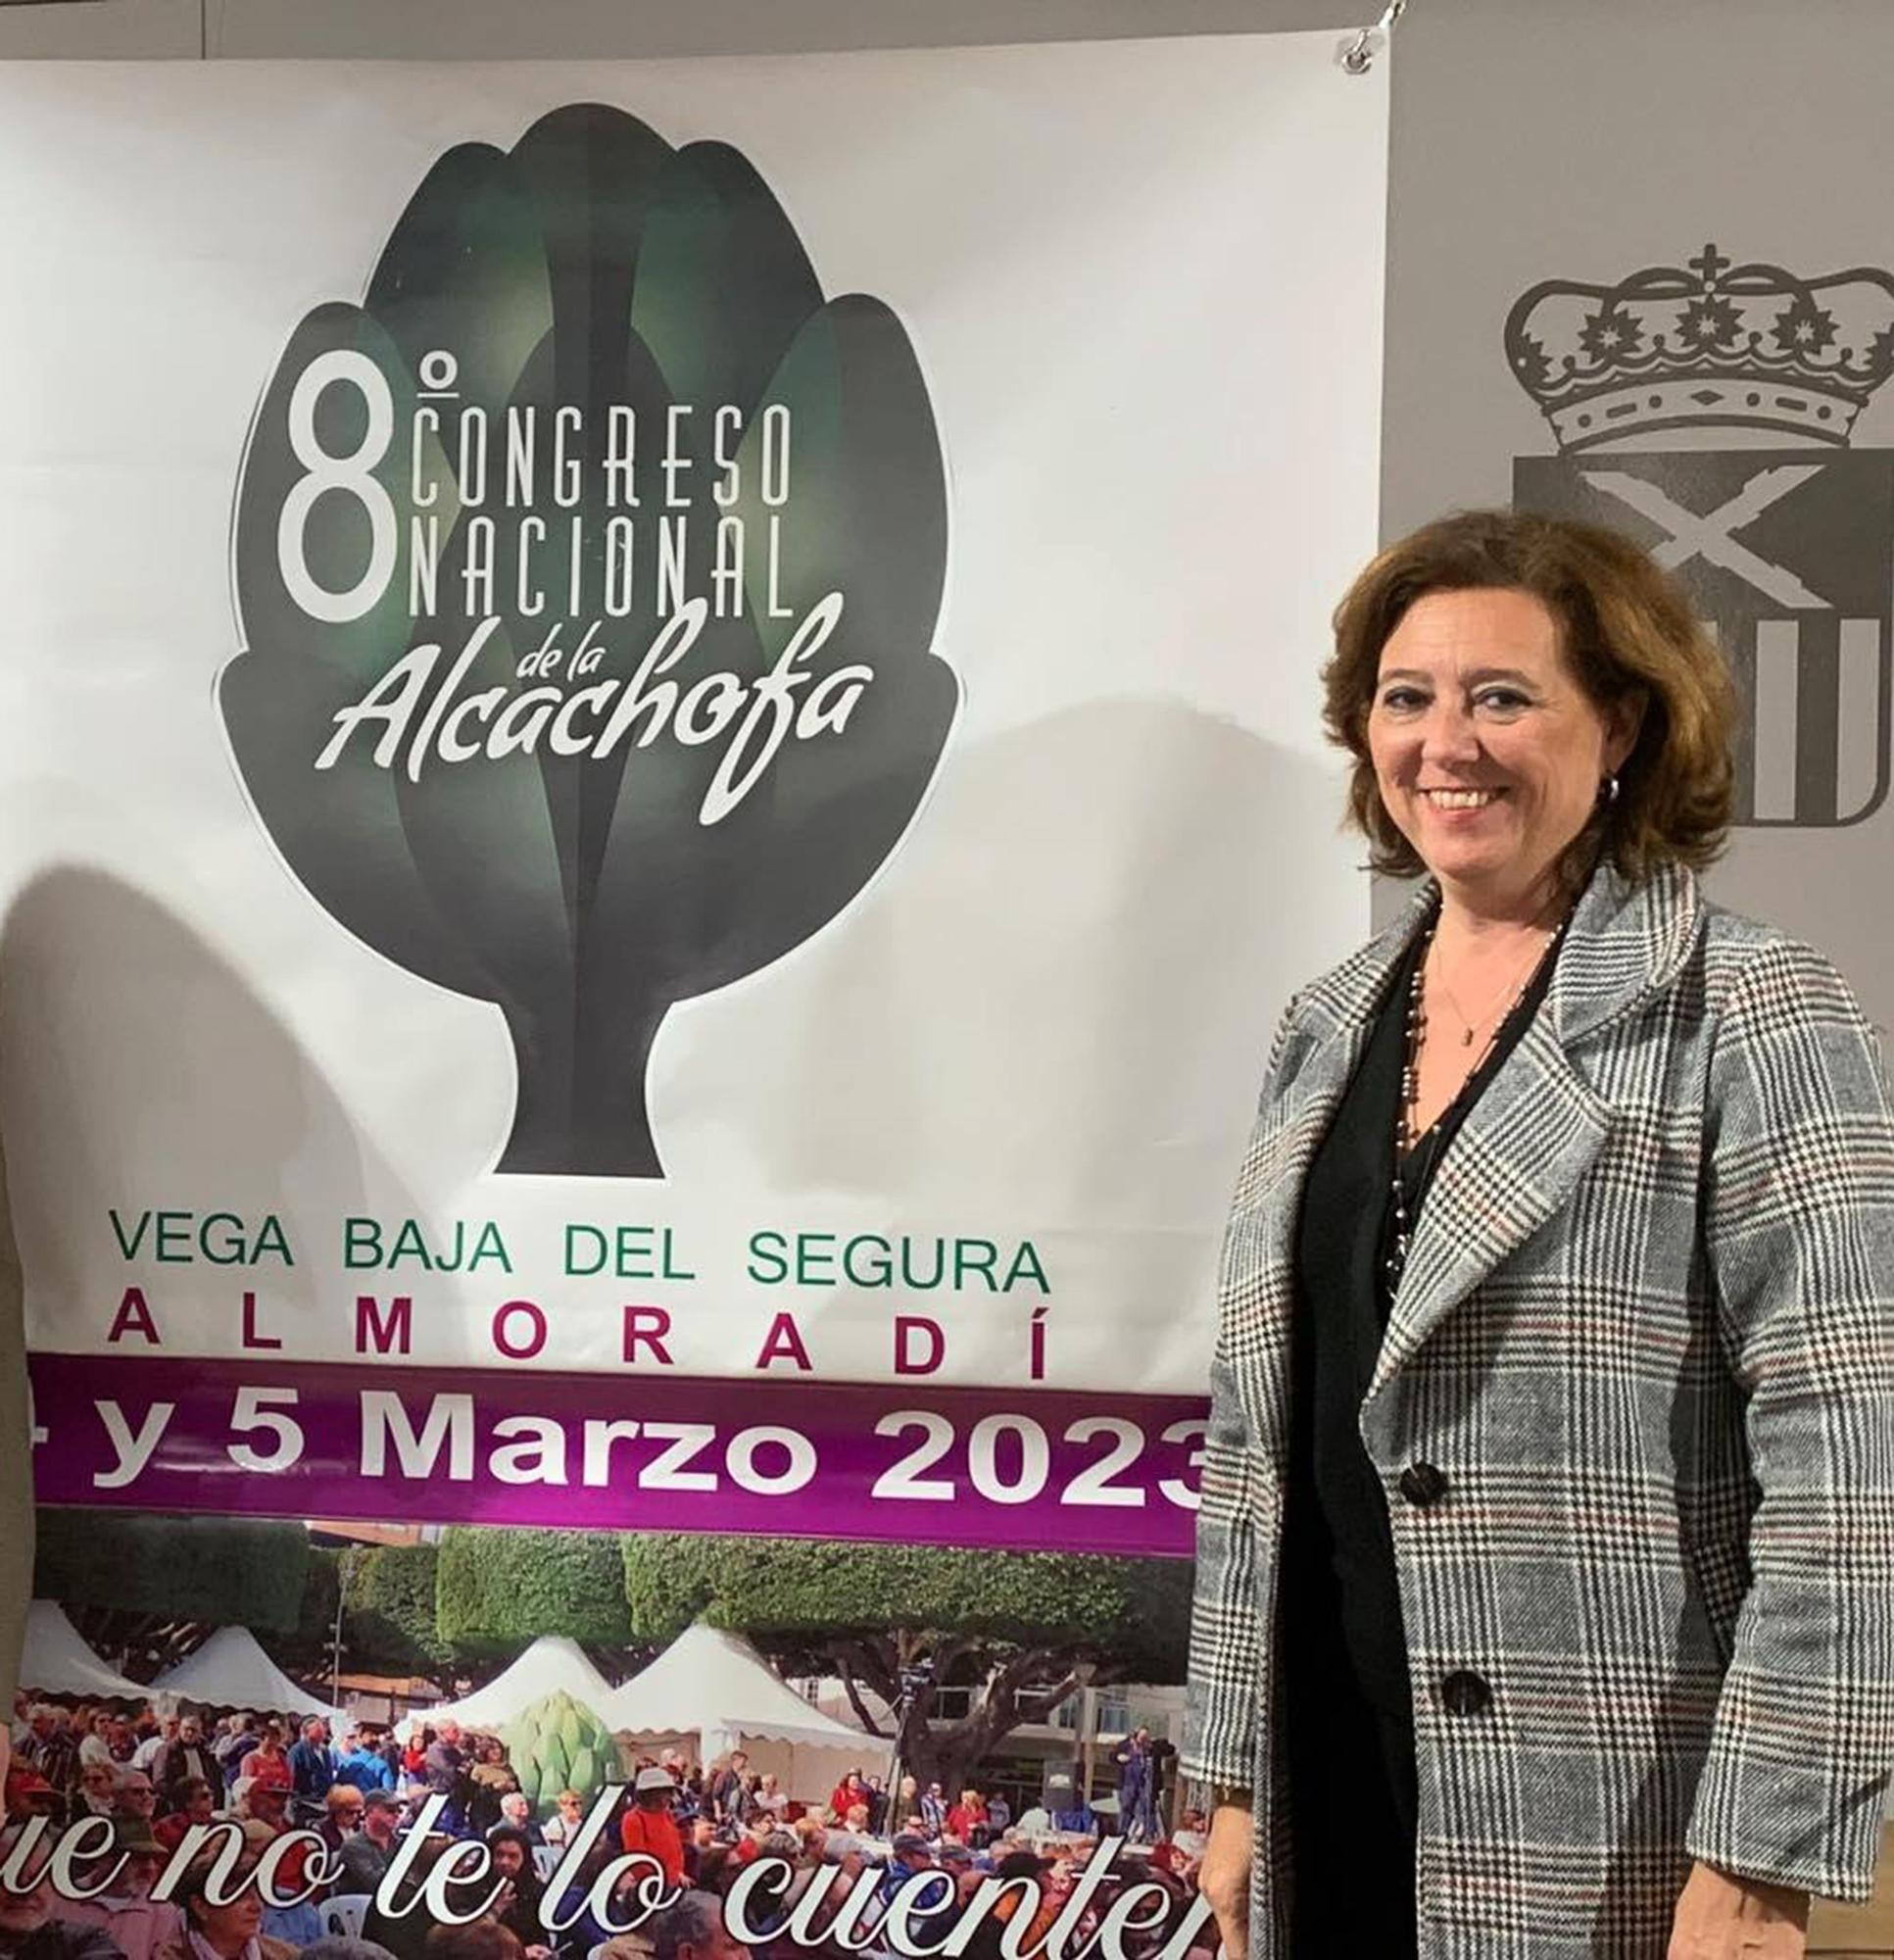 La alcaldesa de Almoradí, María Gómez García, junto al cartel del 8º Congreso Nacional de la Alcachofa.